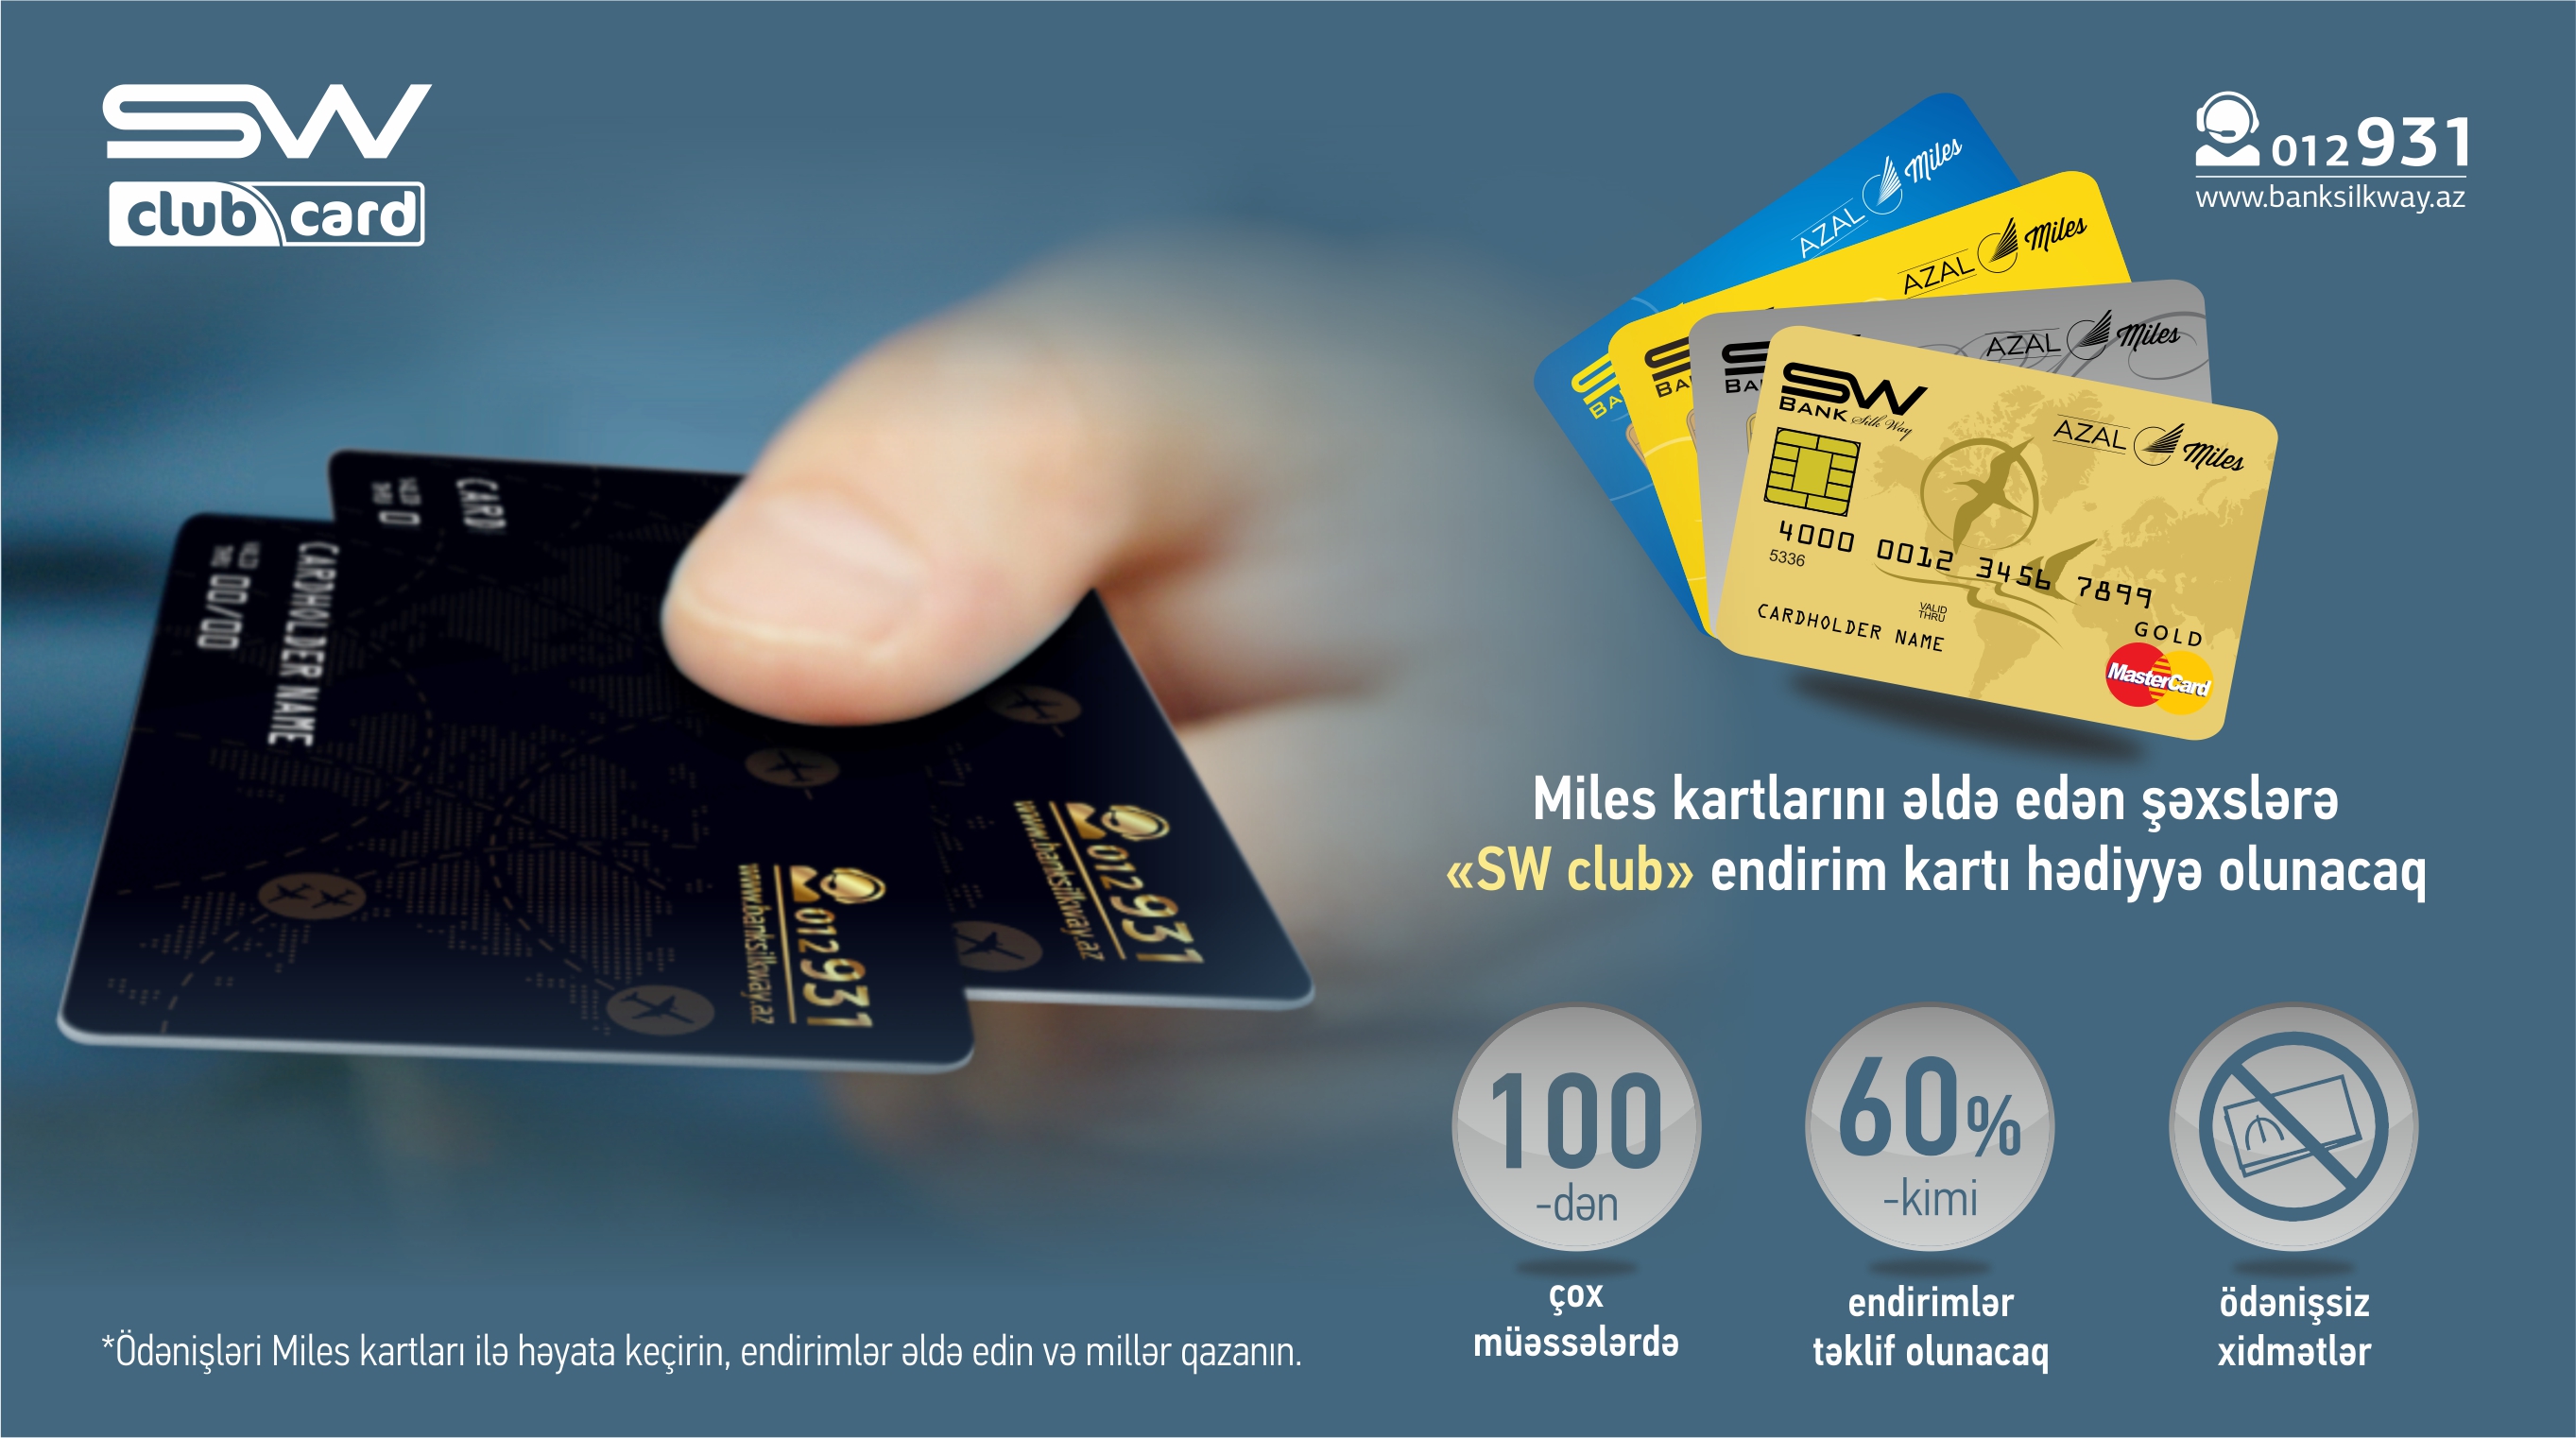 Bank Silk Way plastik kartların sahiblərinə xüsusi 